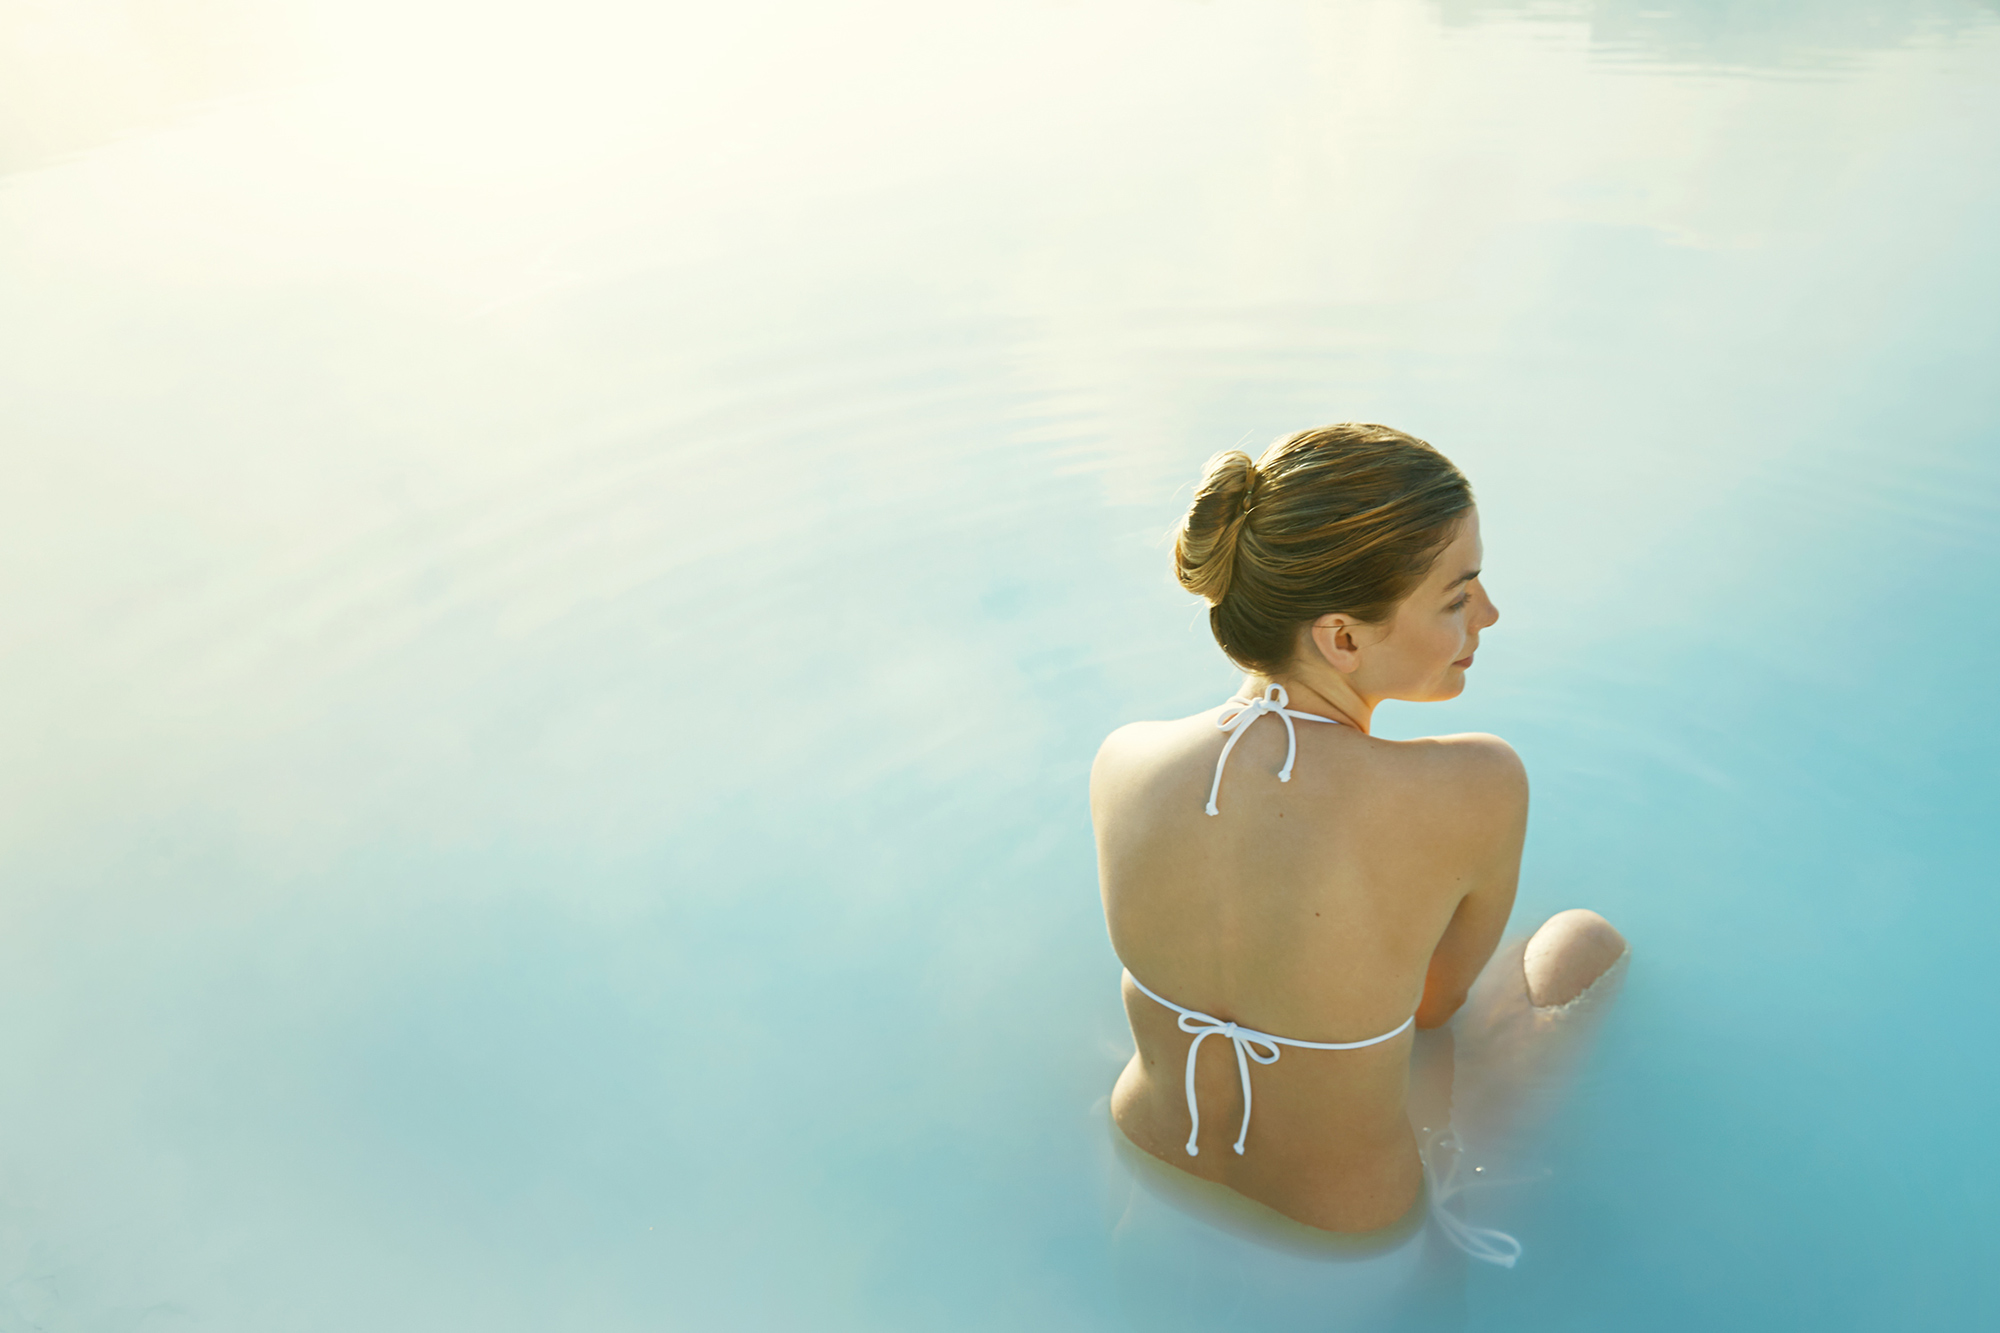 レイキャネス半島に位置するブルーラグーンは世界最大の露天風呂